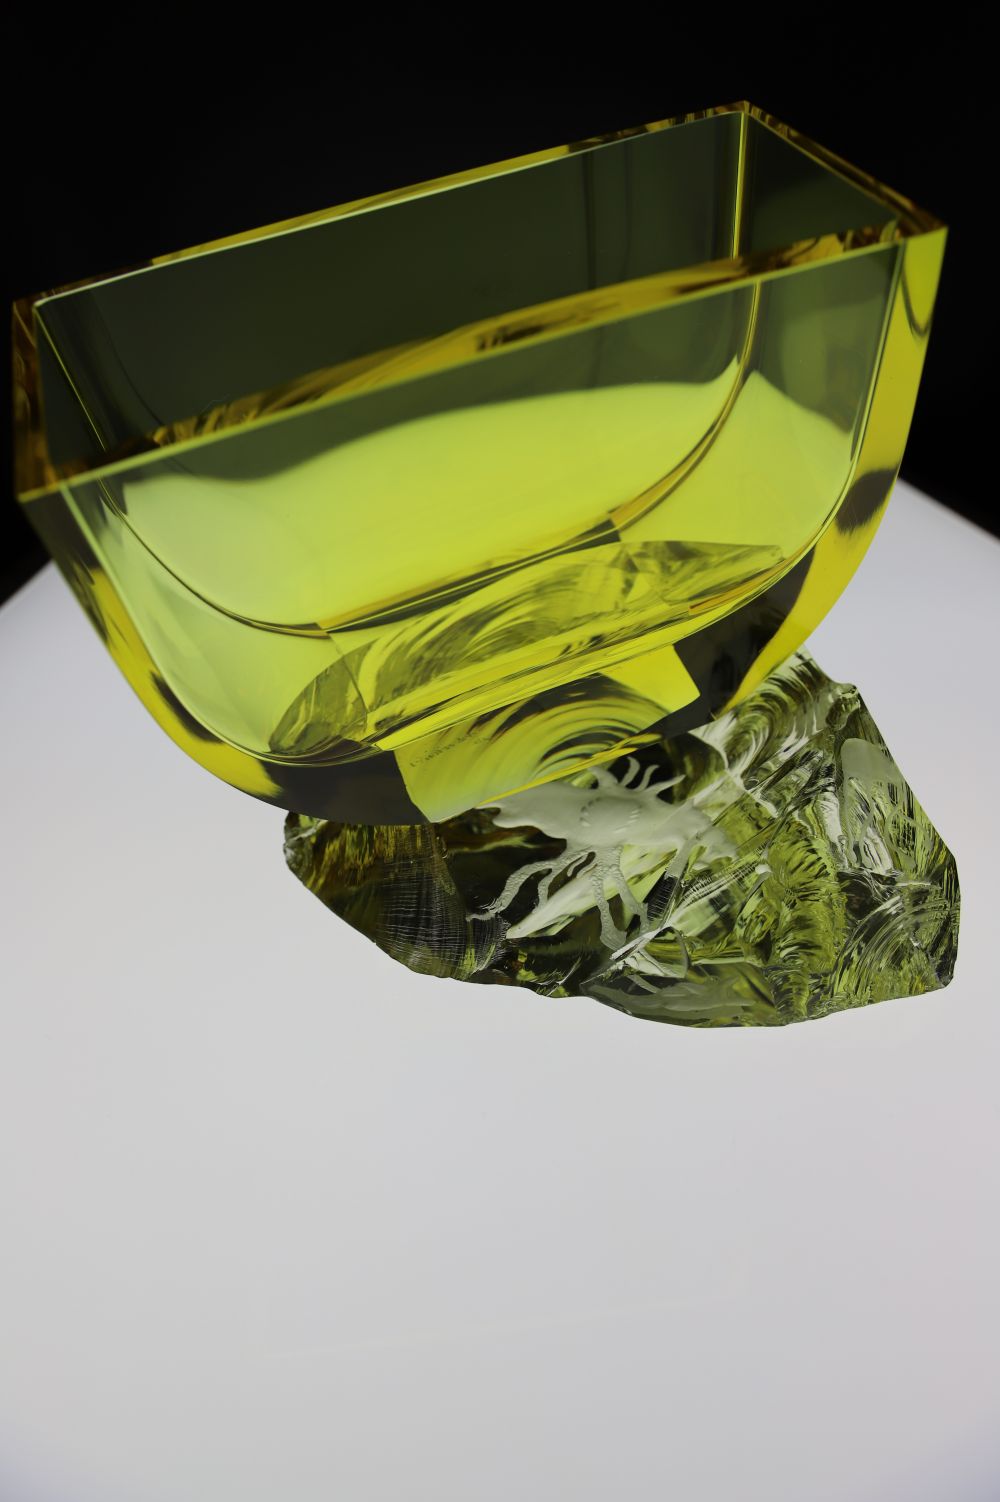 Obrázek v galerii pro Kamenický Šenov: Secondary School of Glassmaking